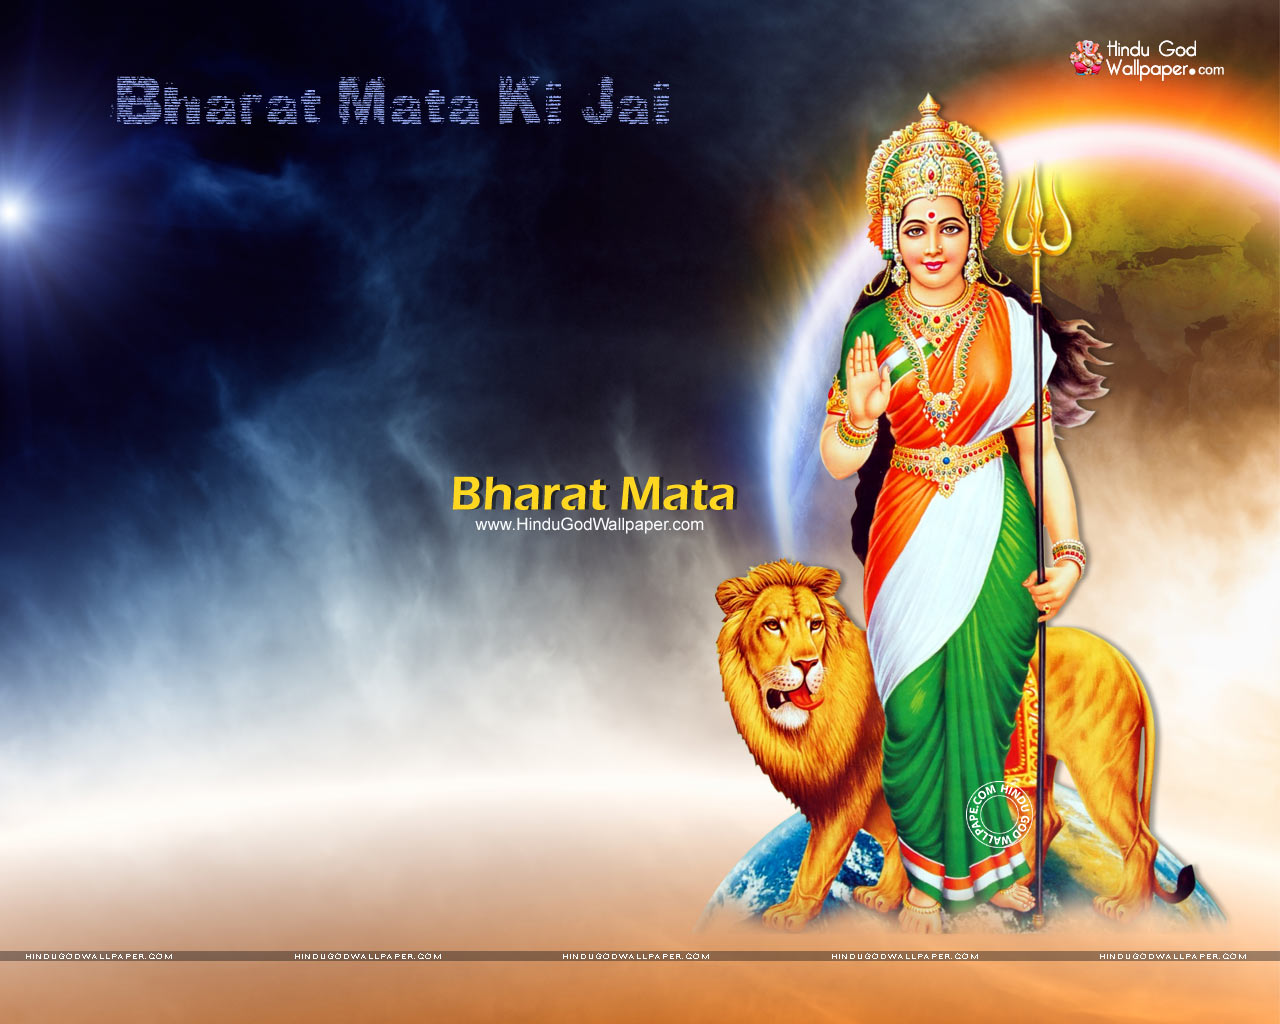 Bharat Mata Ki Jai Wallpapers, Photos, Pictures Free Download